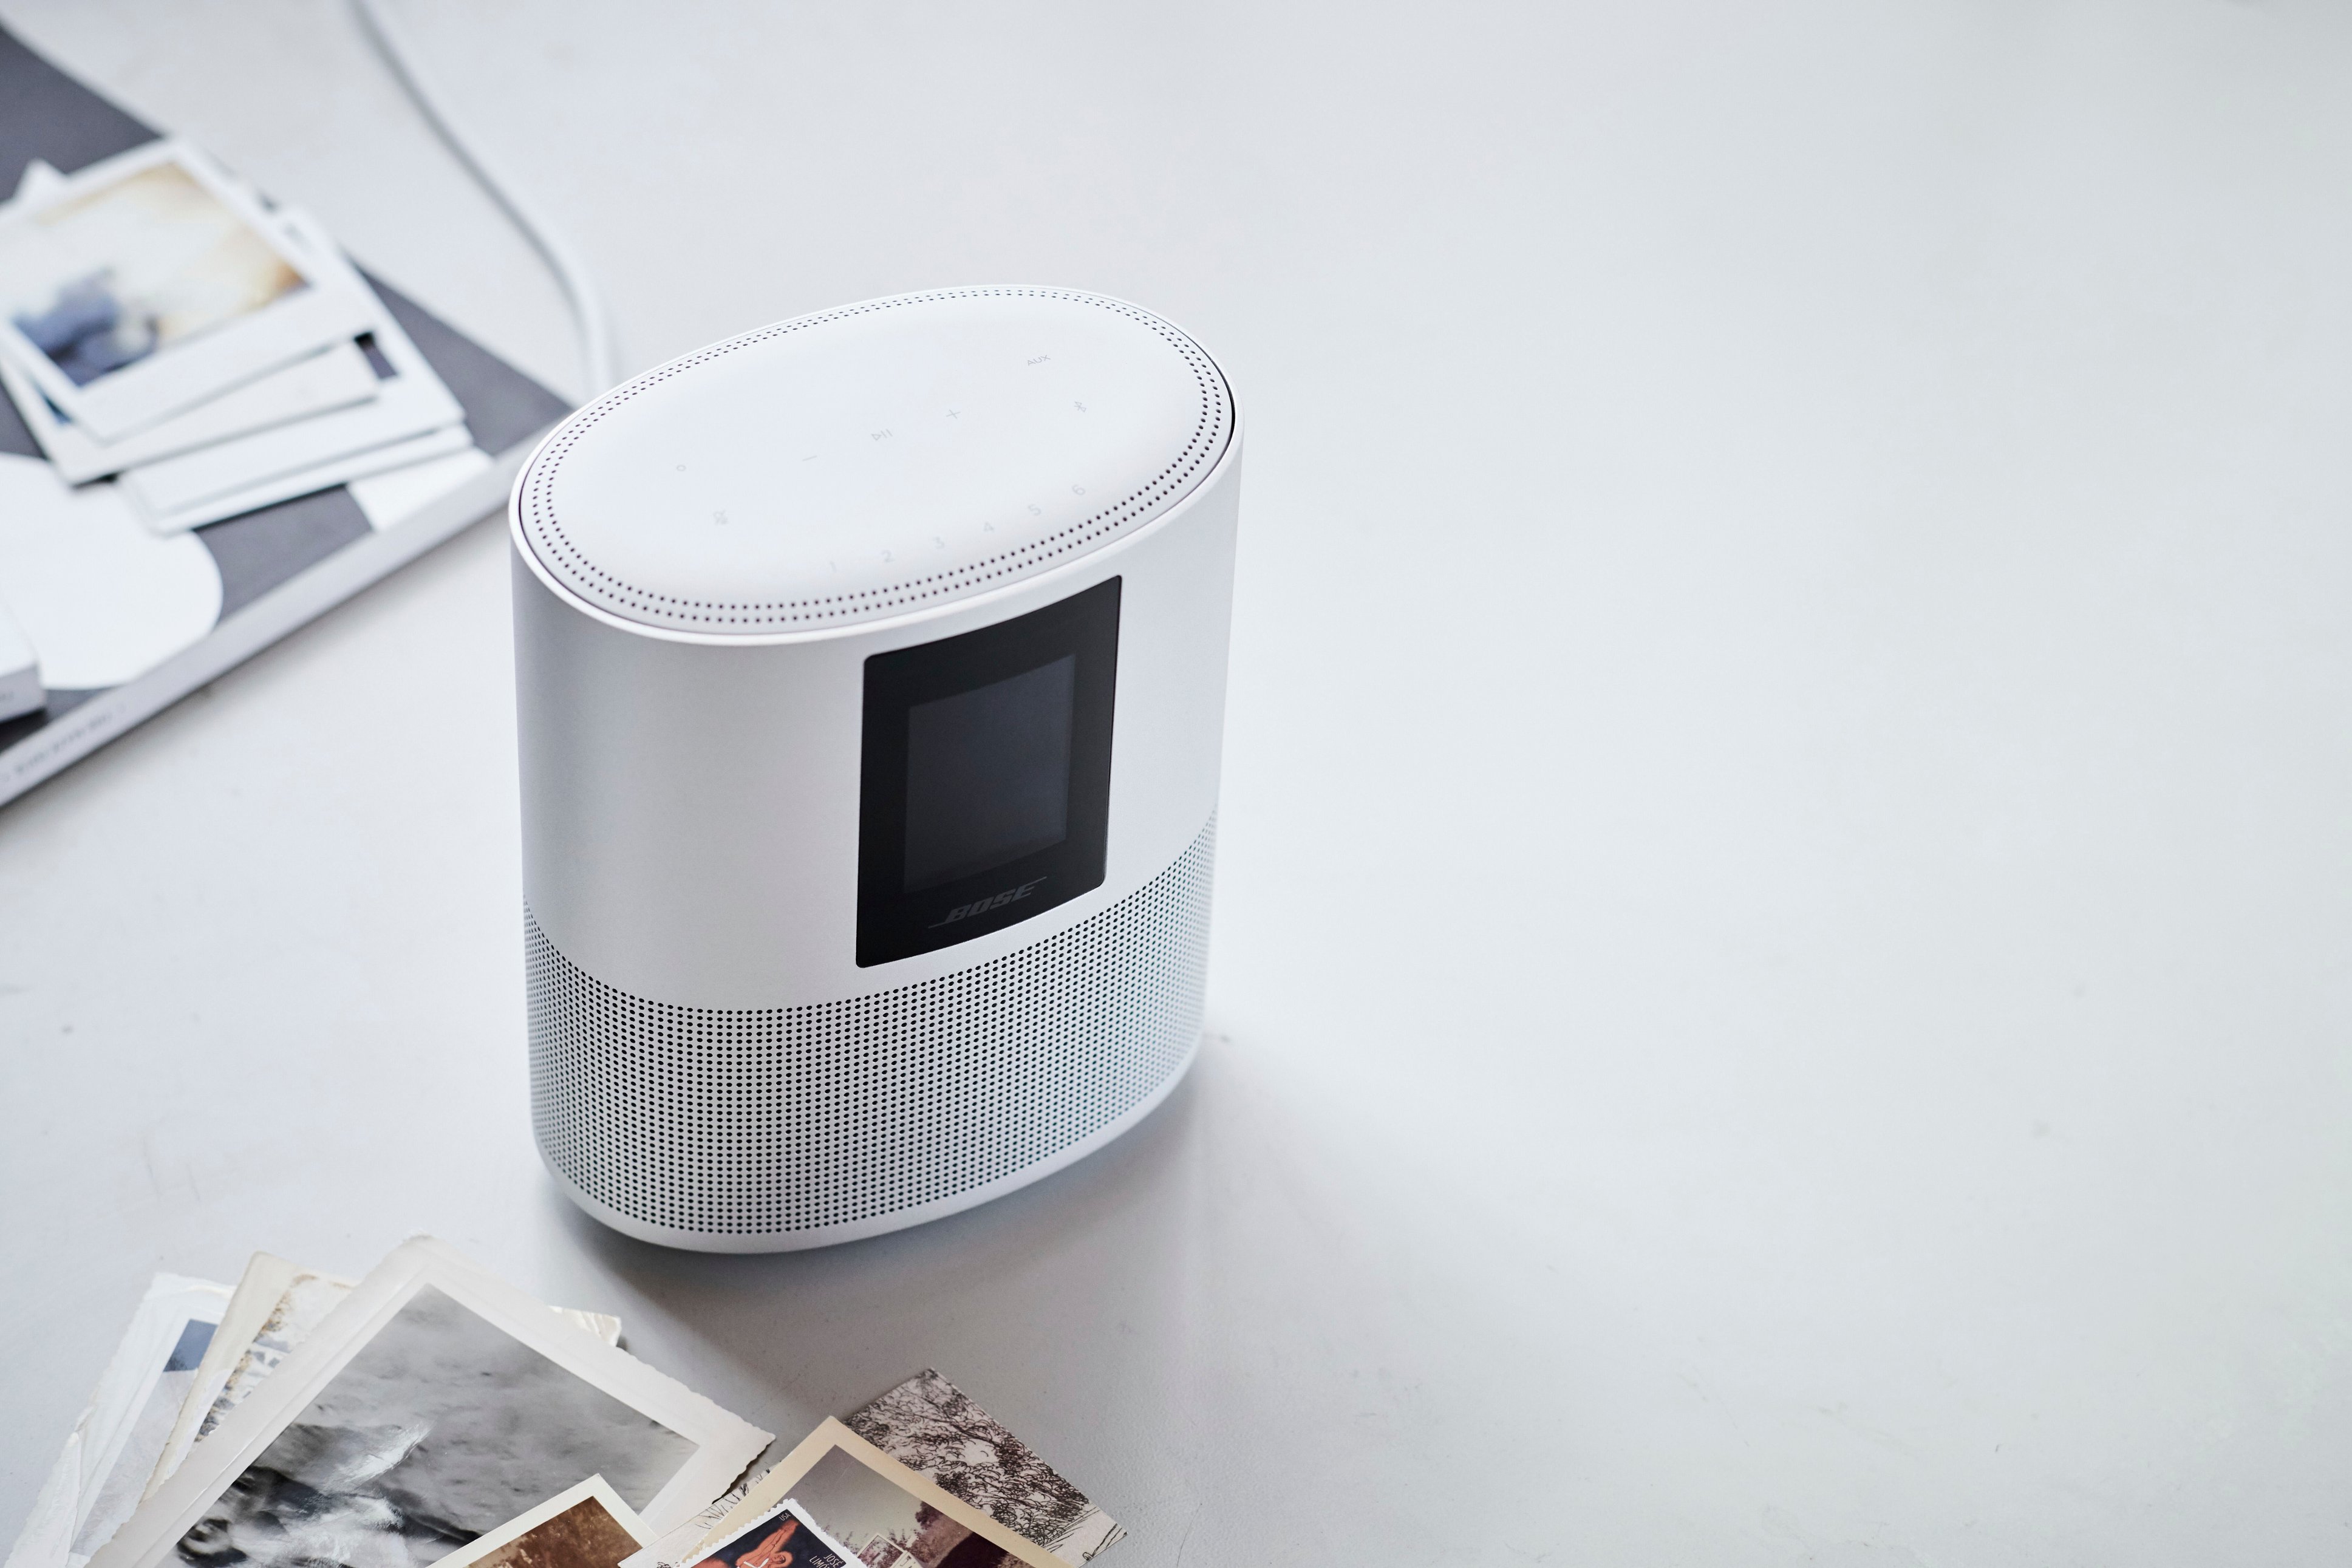 Bose Smart Speaker 500 Wireless All-In-One Smart Speaker Luxe 